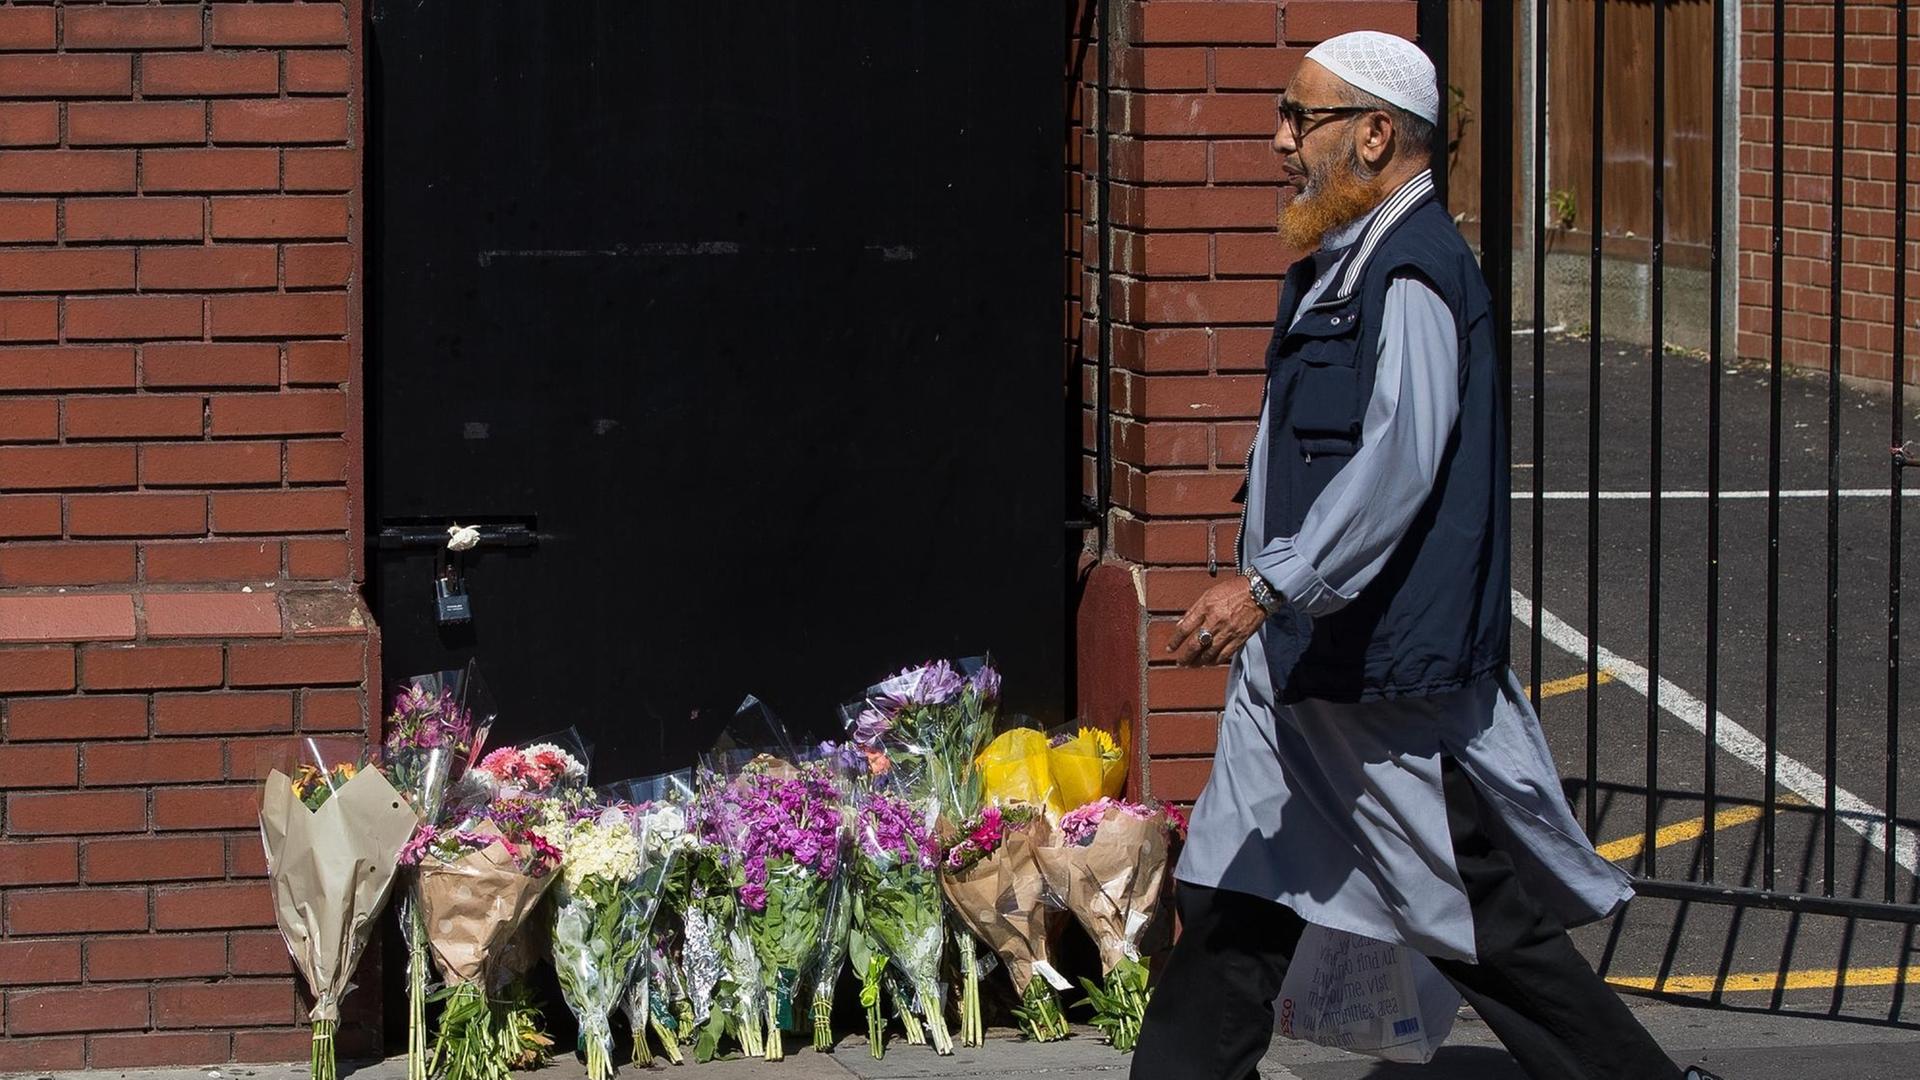 Ein Mann geht am 19.06.2017 in London, Großbritannien, im Stadtteil Finsbury Park an Blumensträußen vorbei. Diese wurden zum Gedenken an den Anschlag dorthin gelegt.